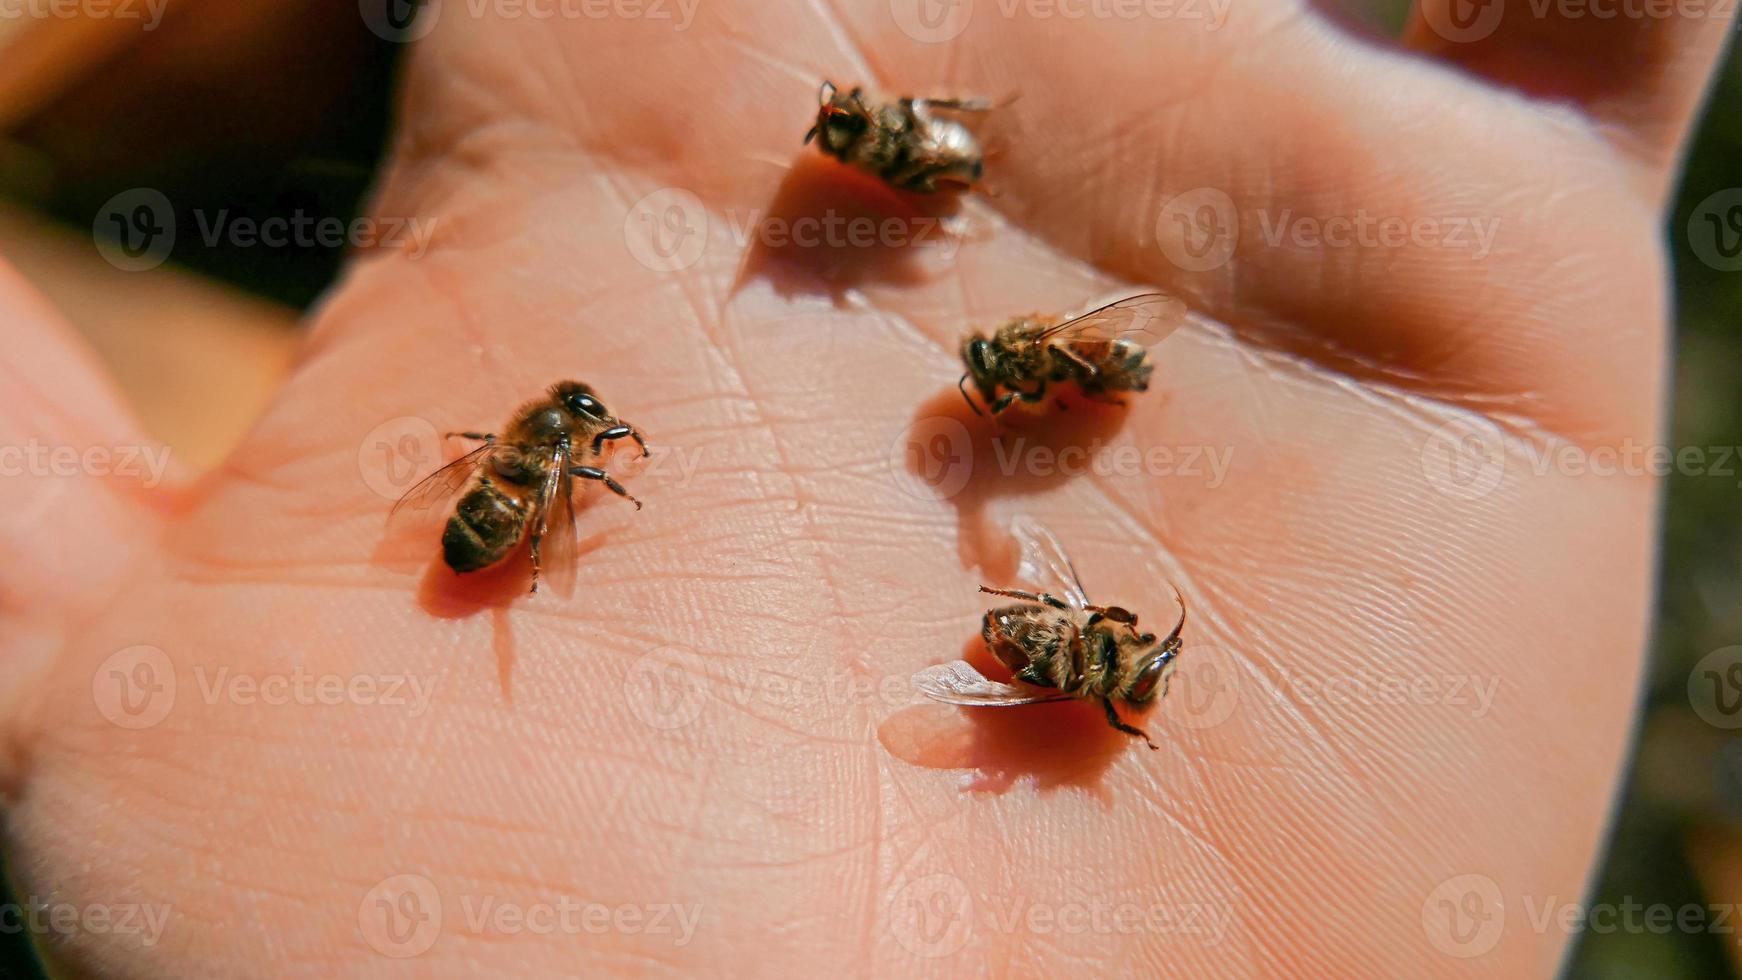 tote Bienen auf einer Handfläche foto